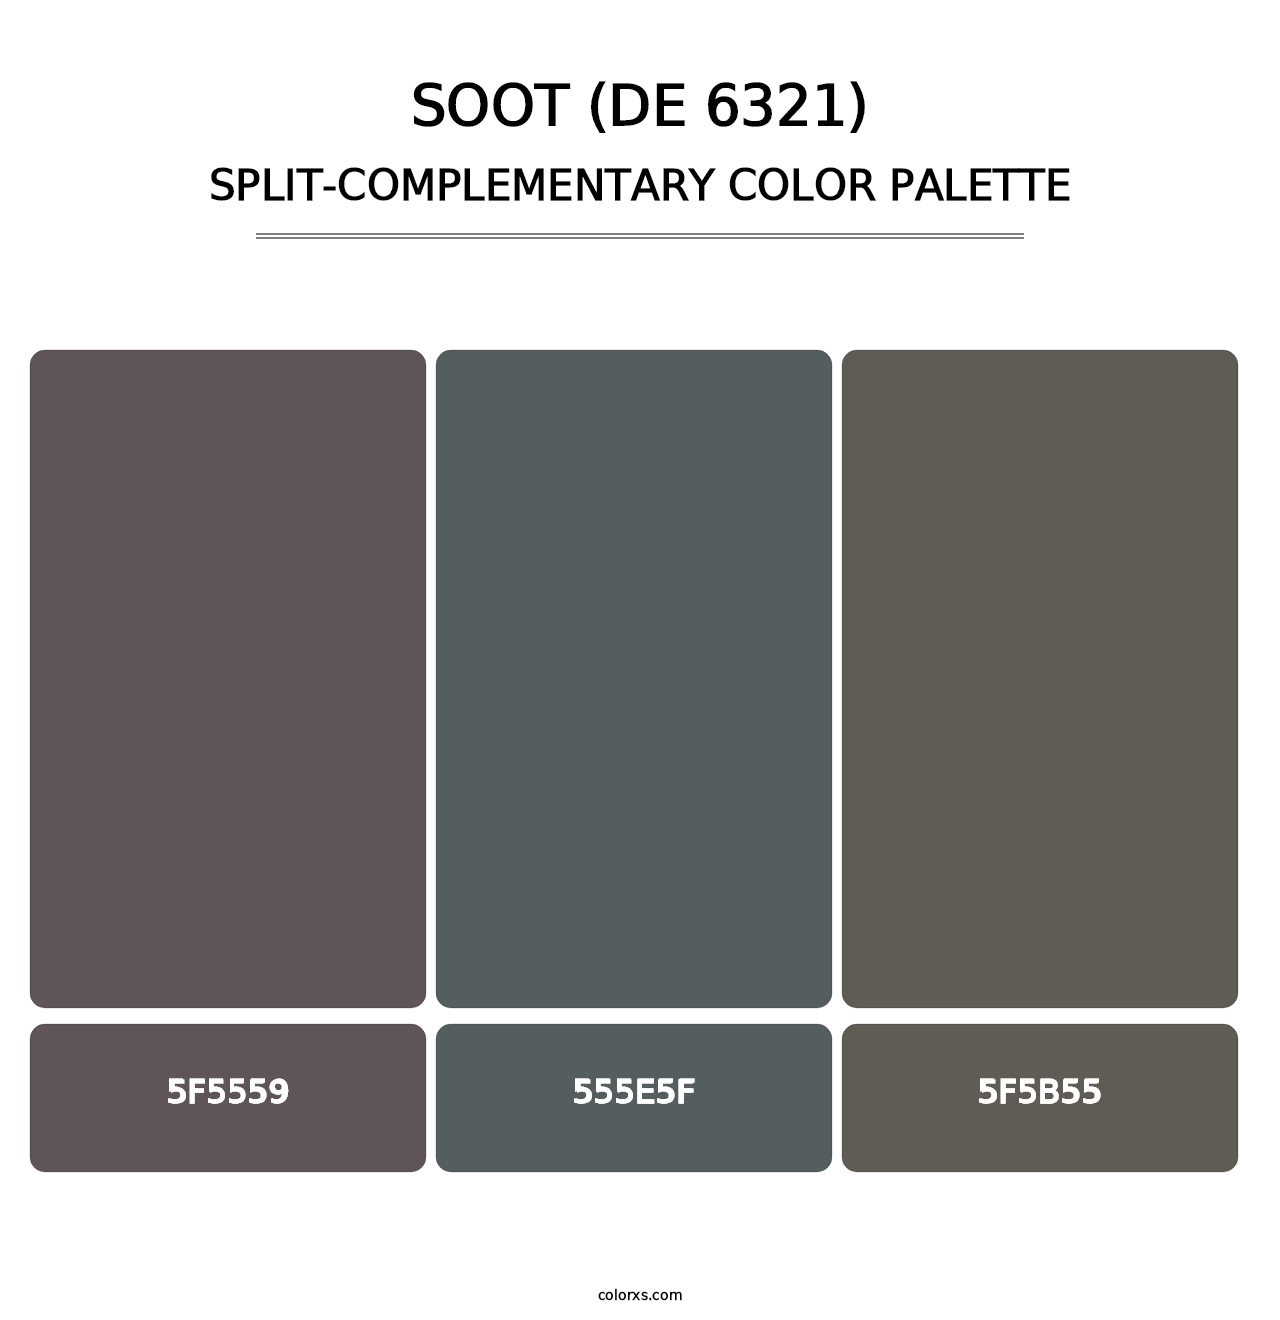 Soot (DE 6321) - Split-Complementary Color Palette